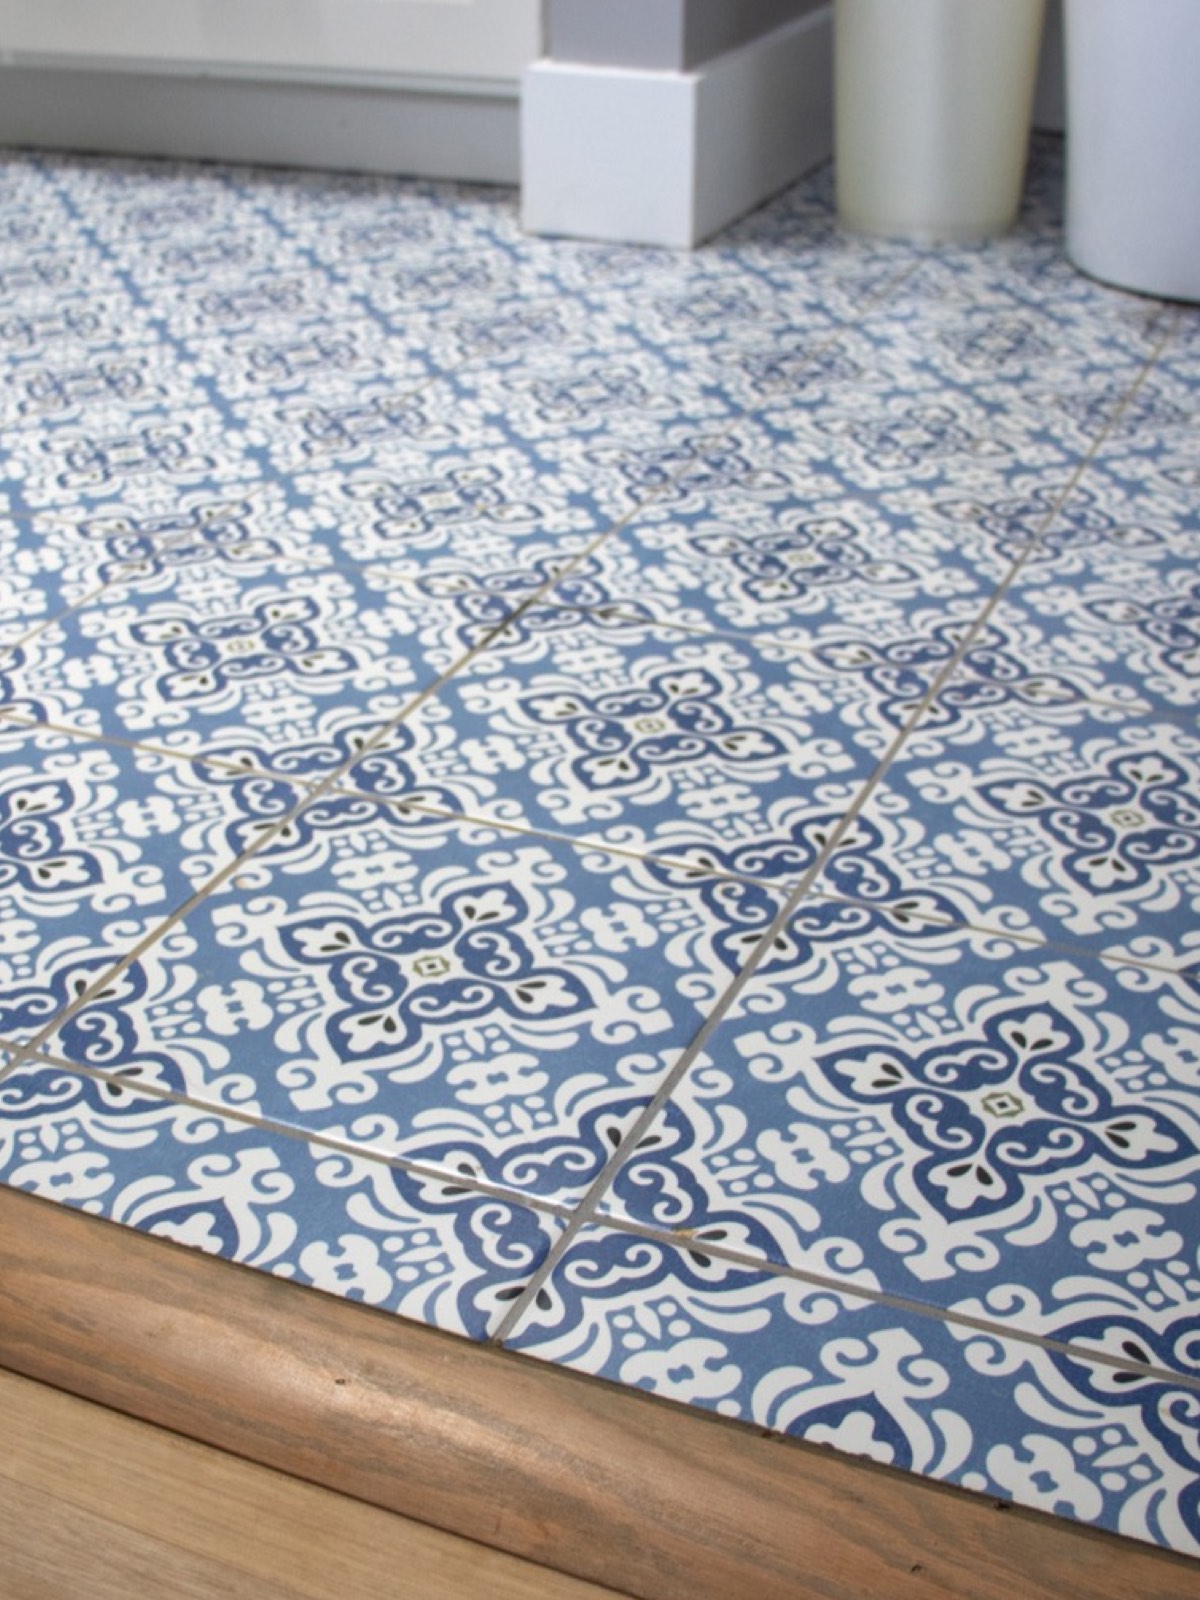 Tile flooring | Dehart Tile